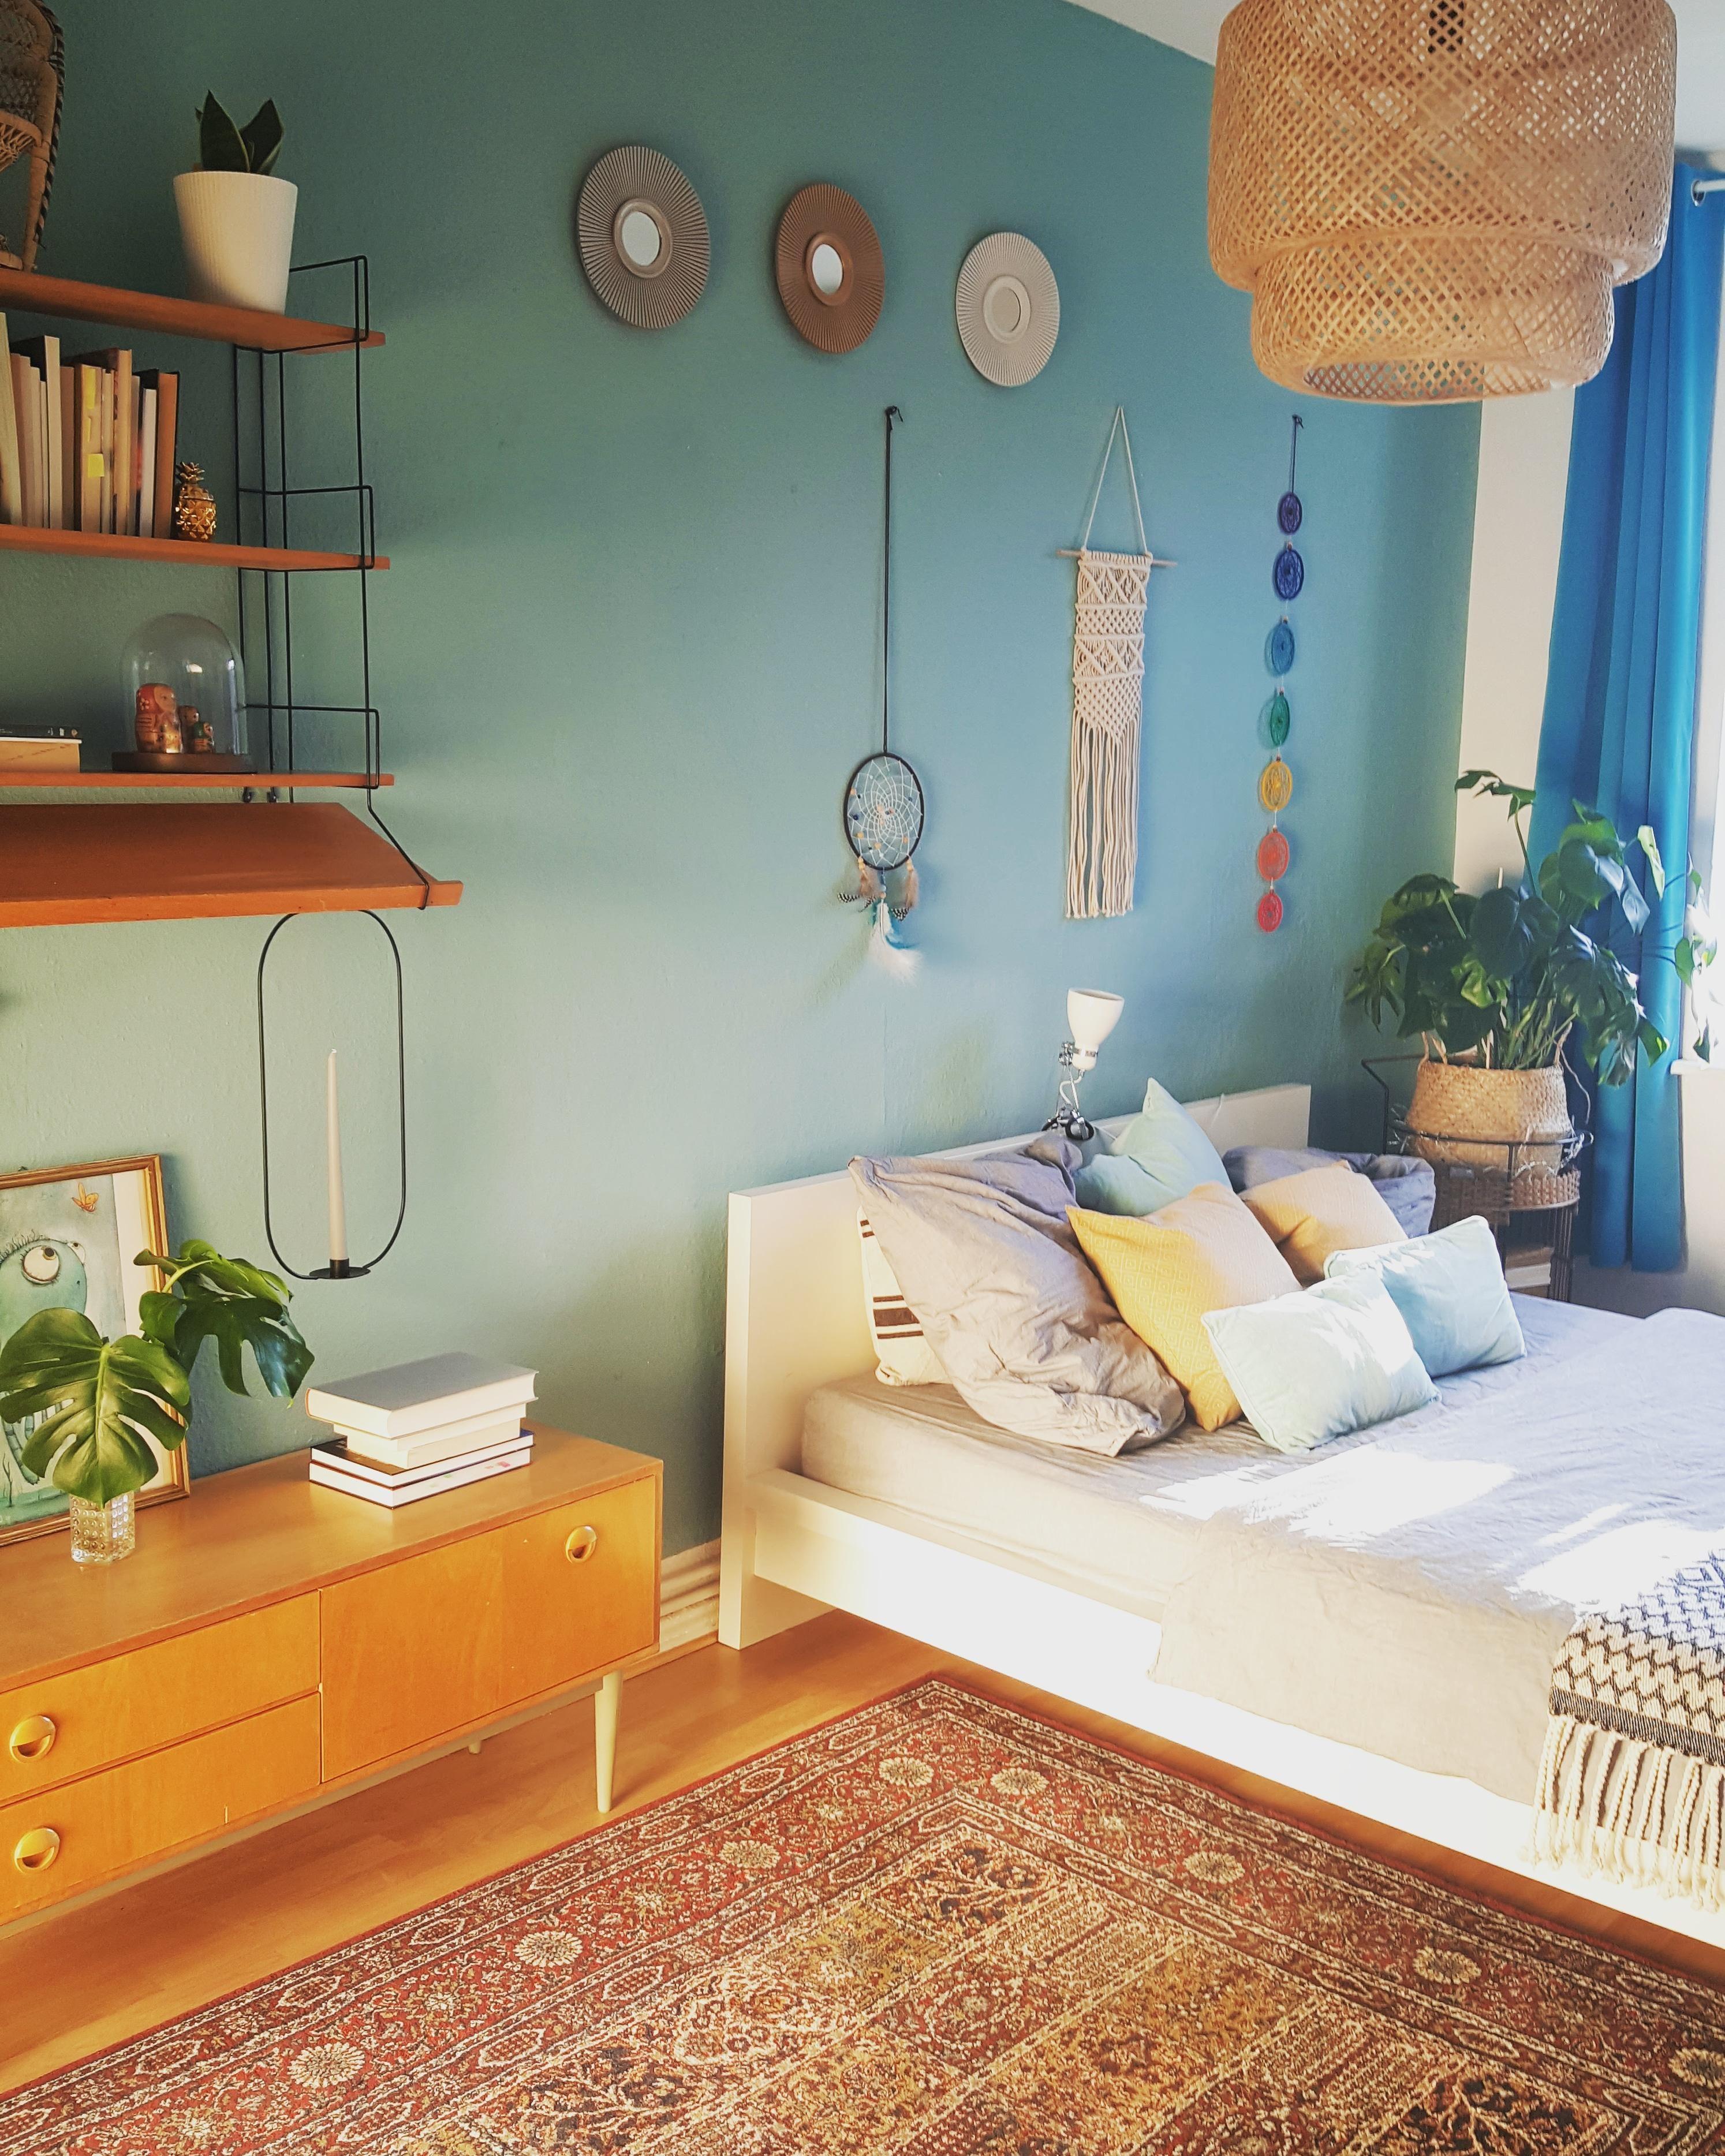 #skandinavischstyle #bedroom #retro #vintage